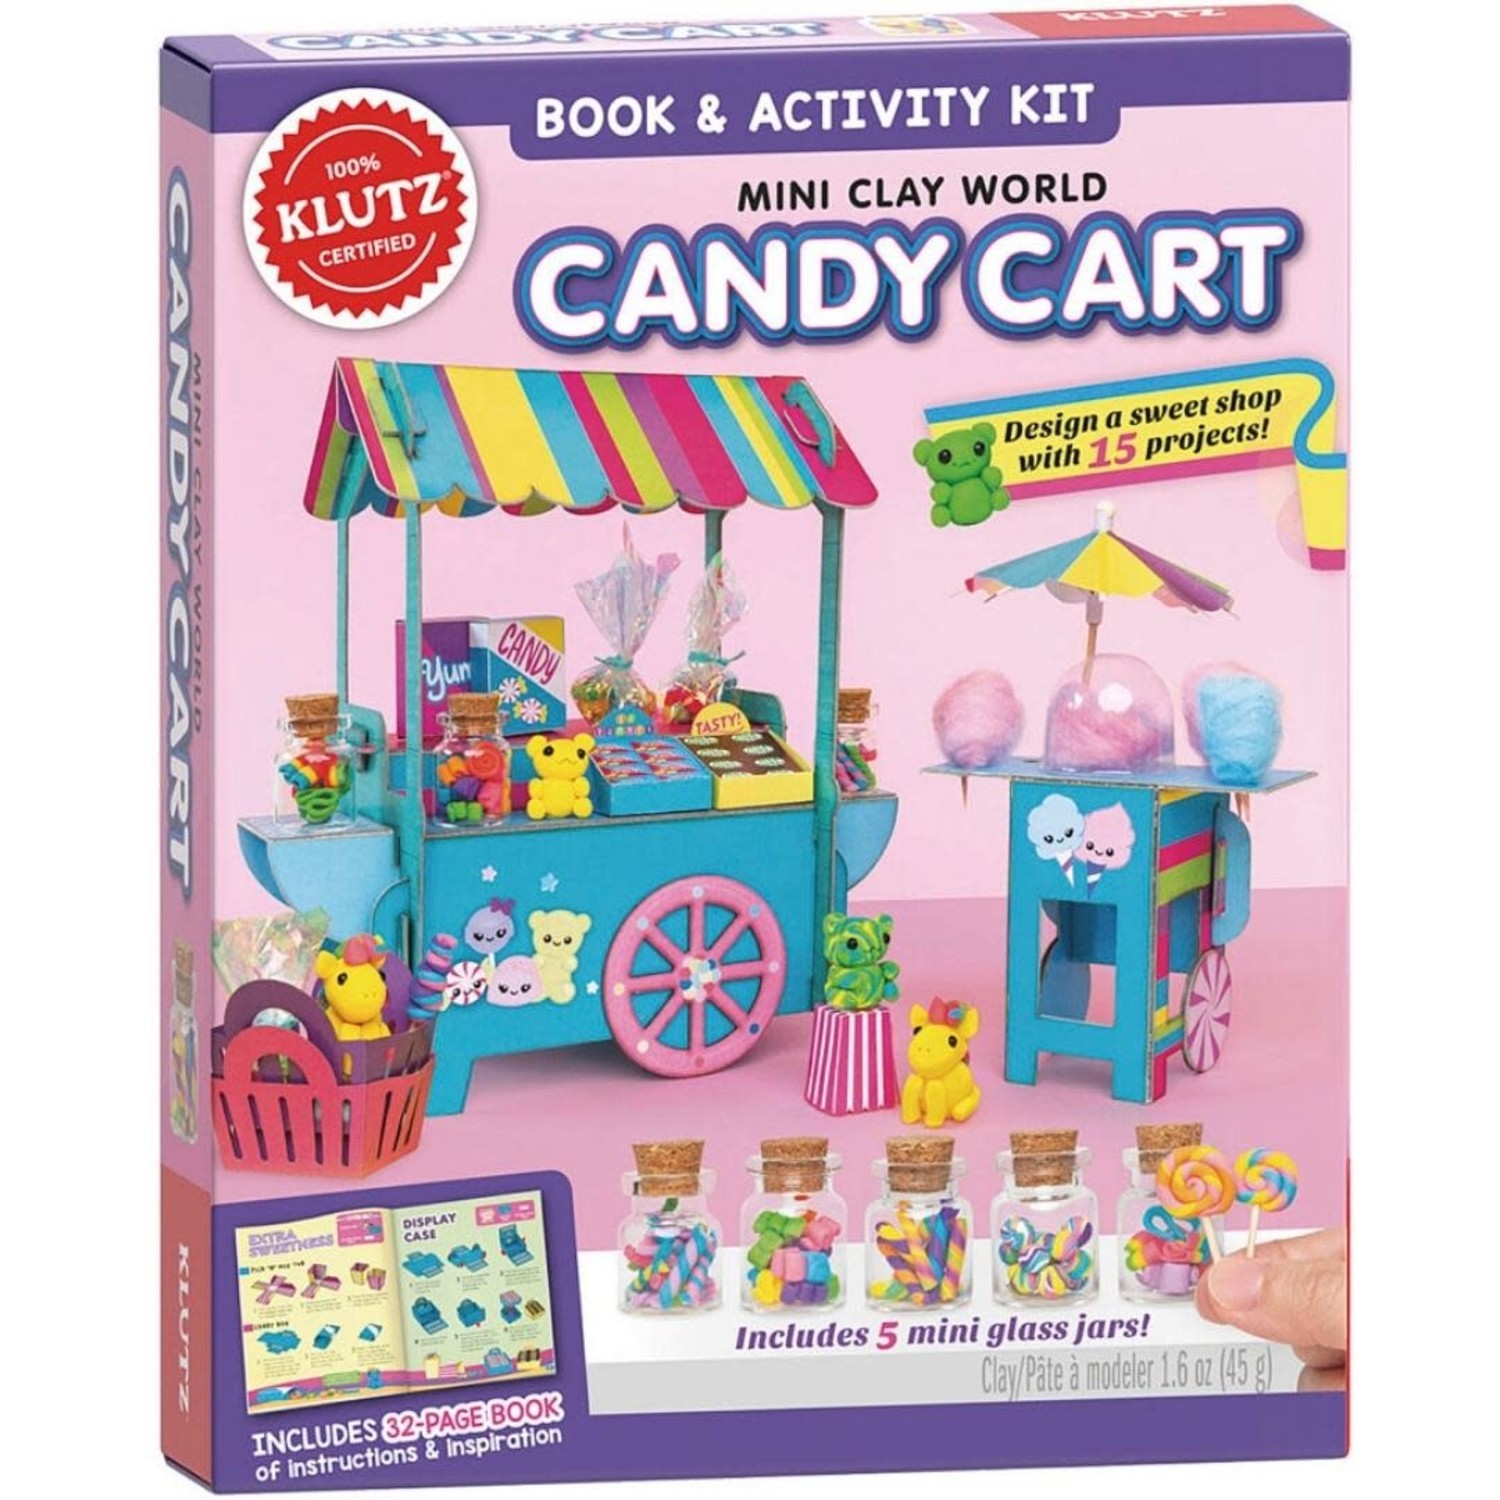 https://cdn.shoplightspeed.com/shops/653480/files/44603121/1500x4000x3/klutz-mini-clay-world-candy-cart-klutz.jpg